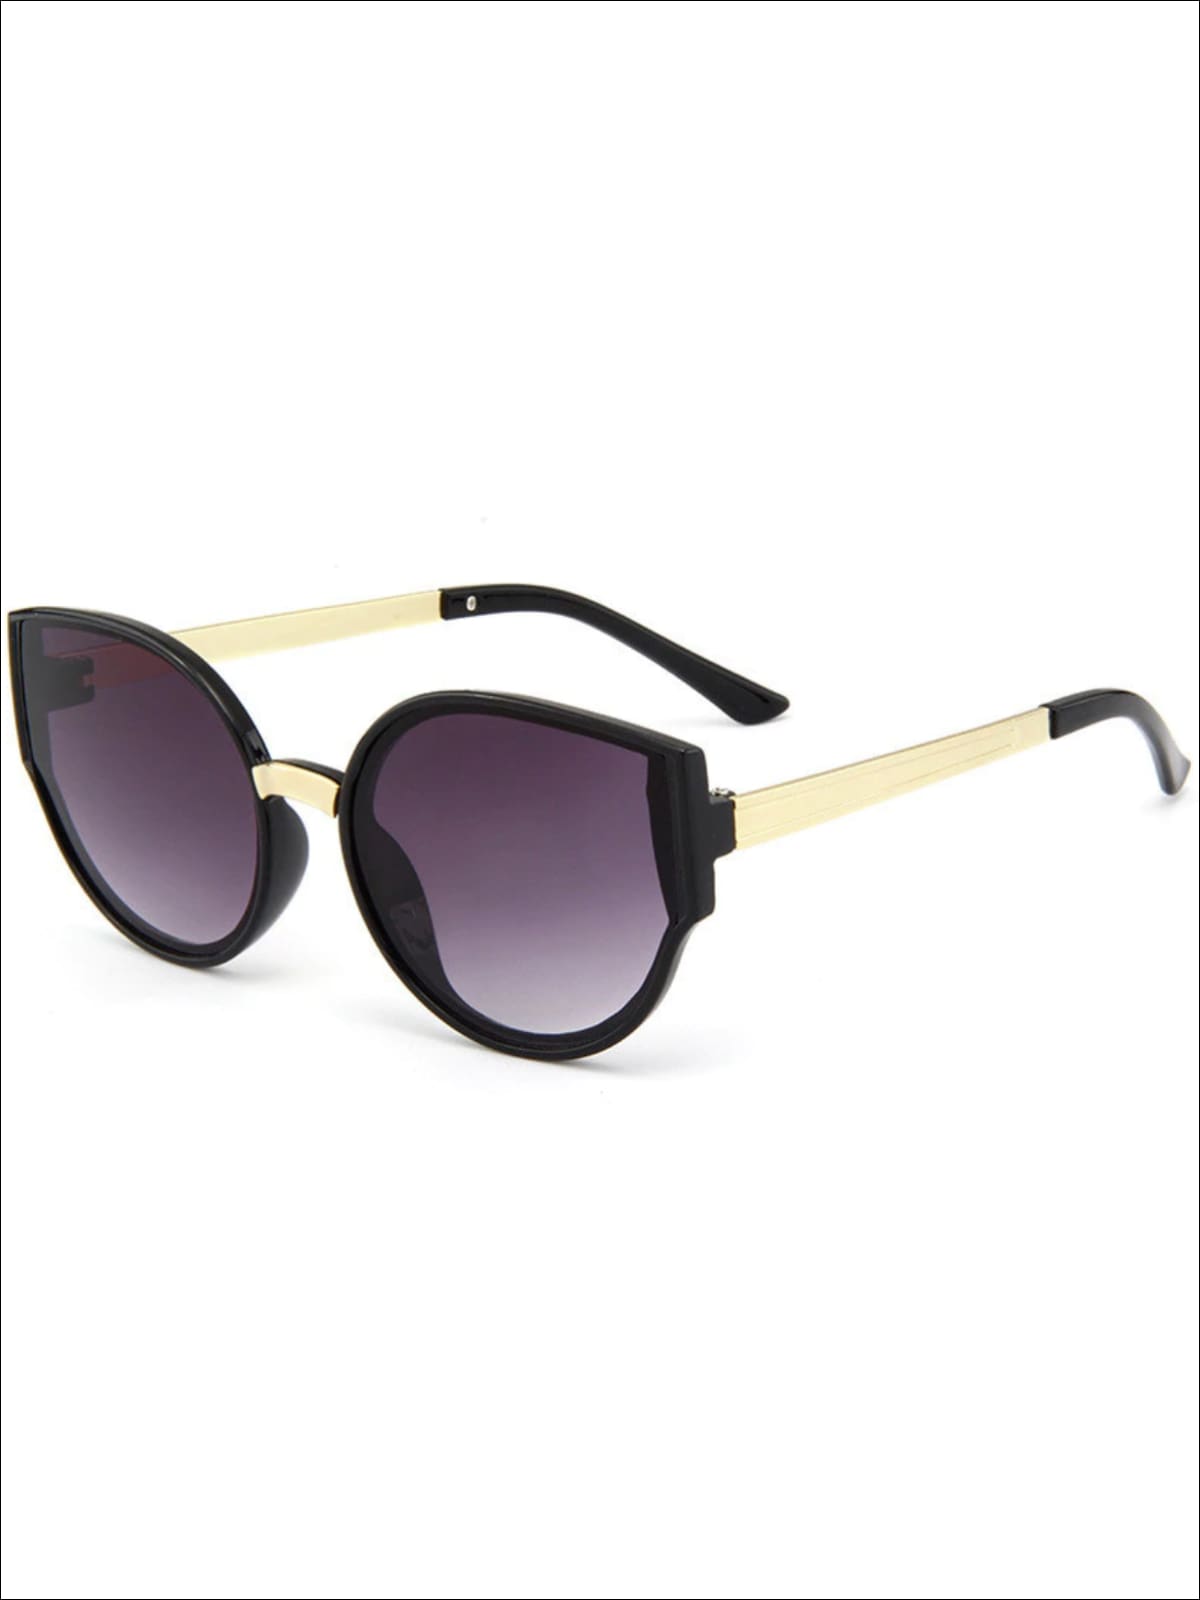 Girls Retro Cat Eye Sunglasses - Black - Girls Accessories